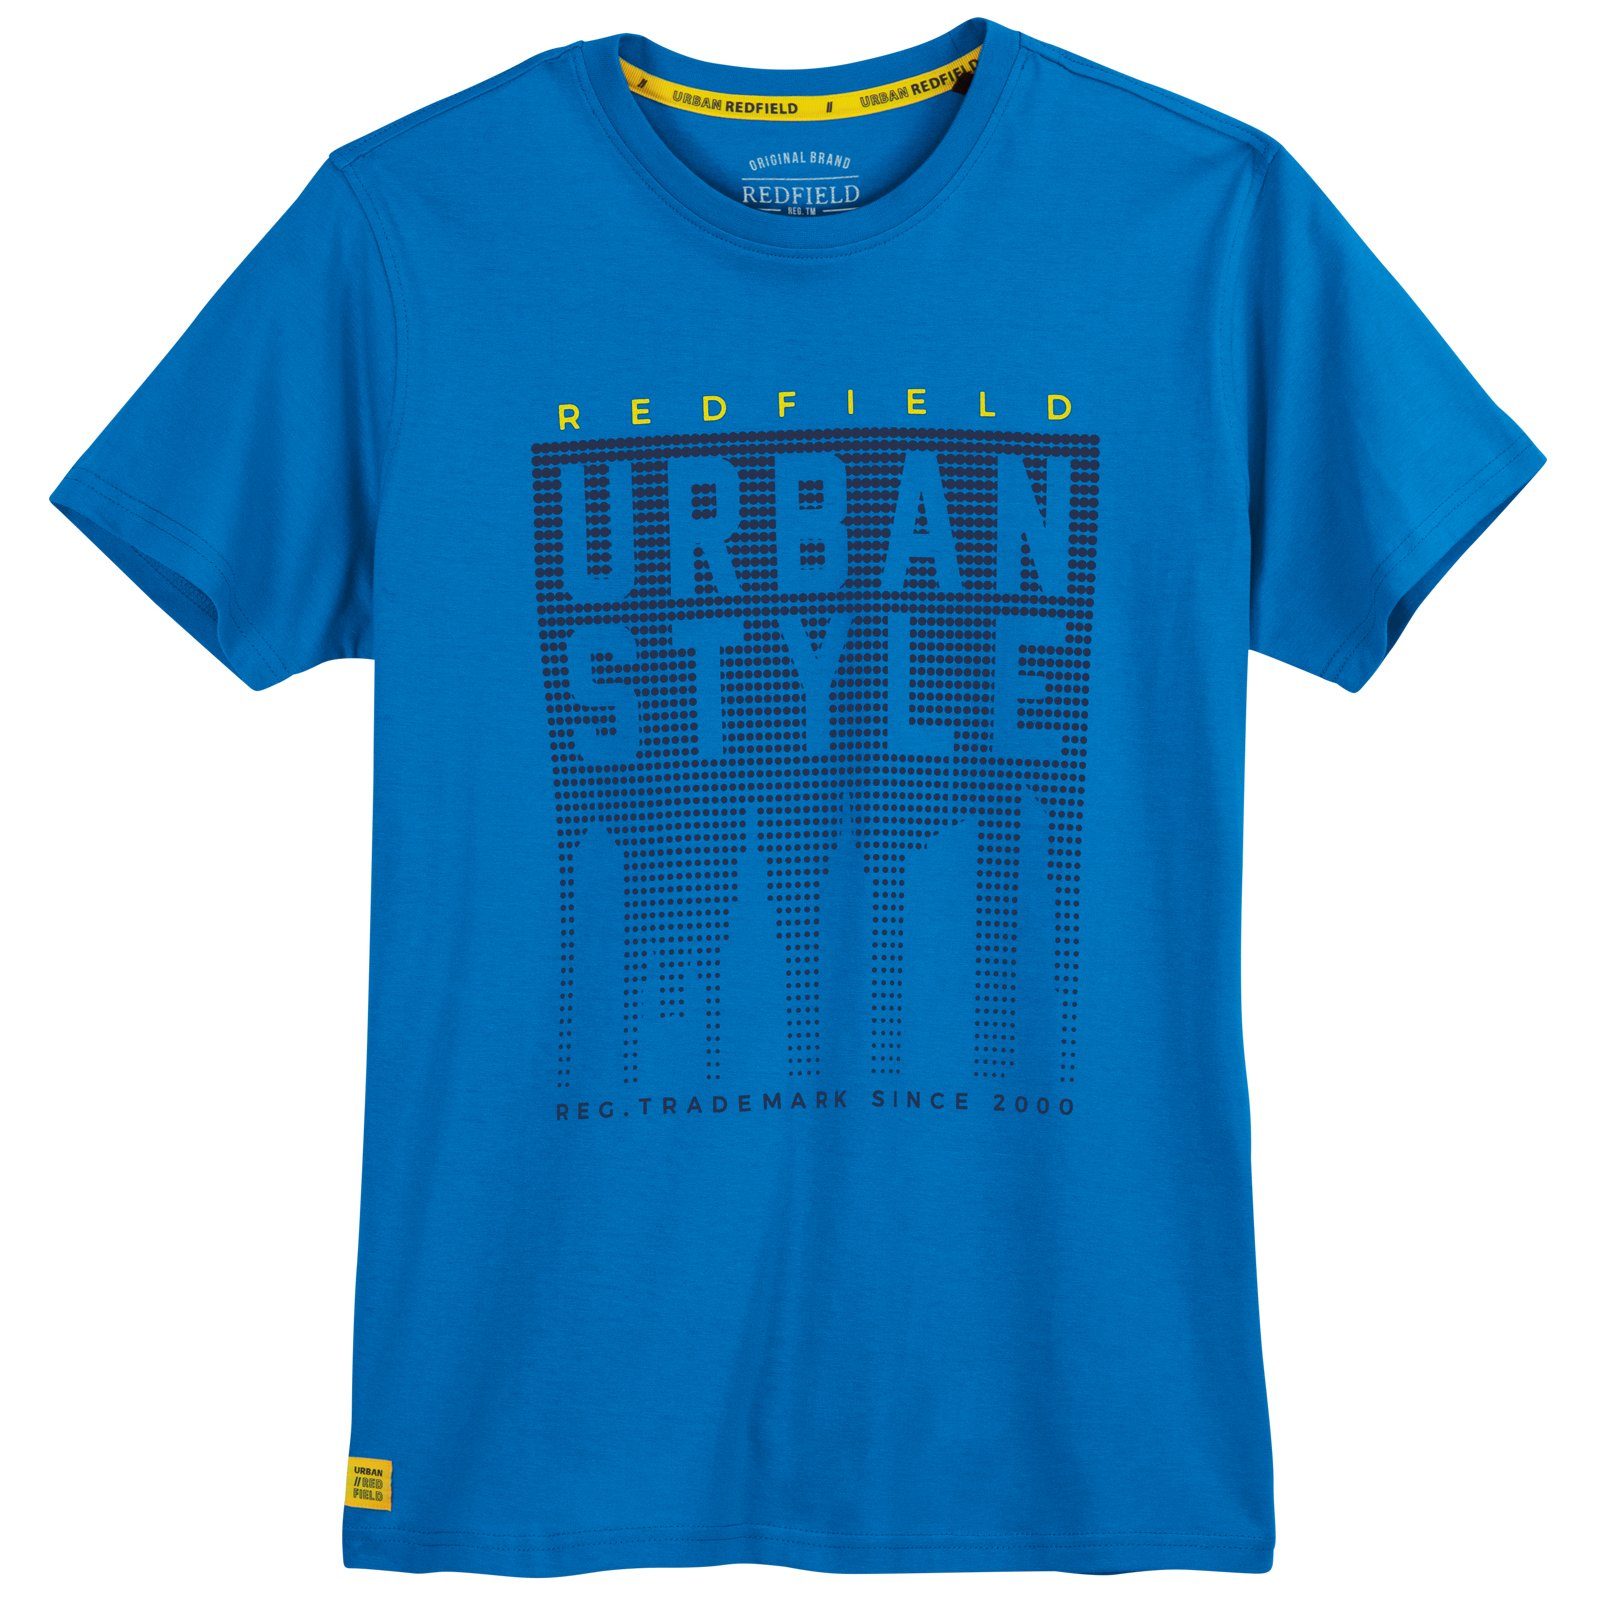 redfield Rundhalsshirt Große Größen Herren T-Shirt royalblau Print Urban Style Redfield